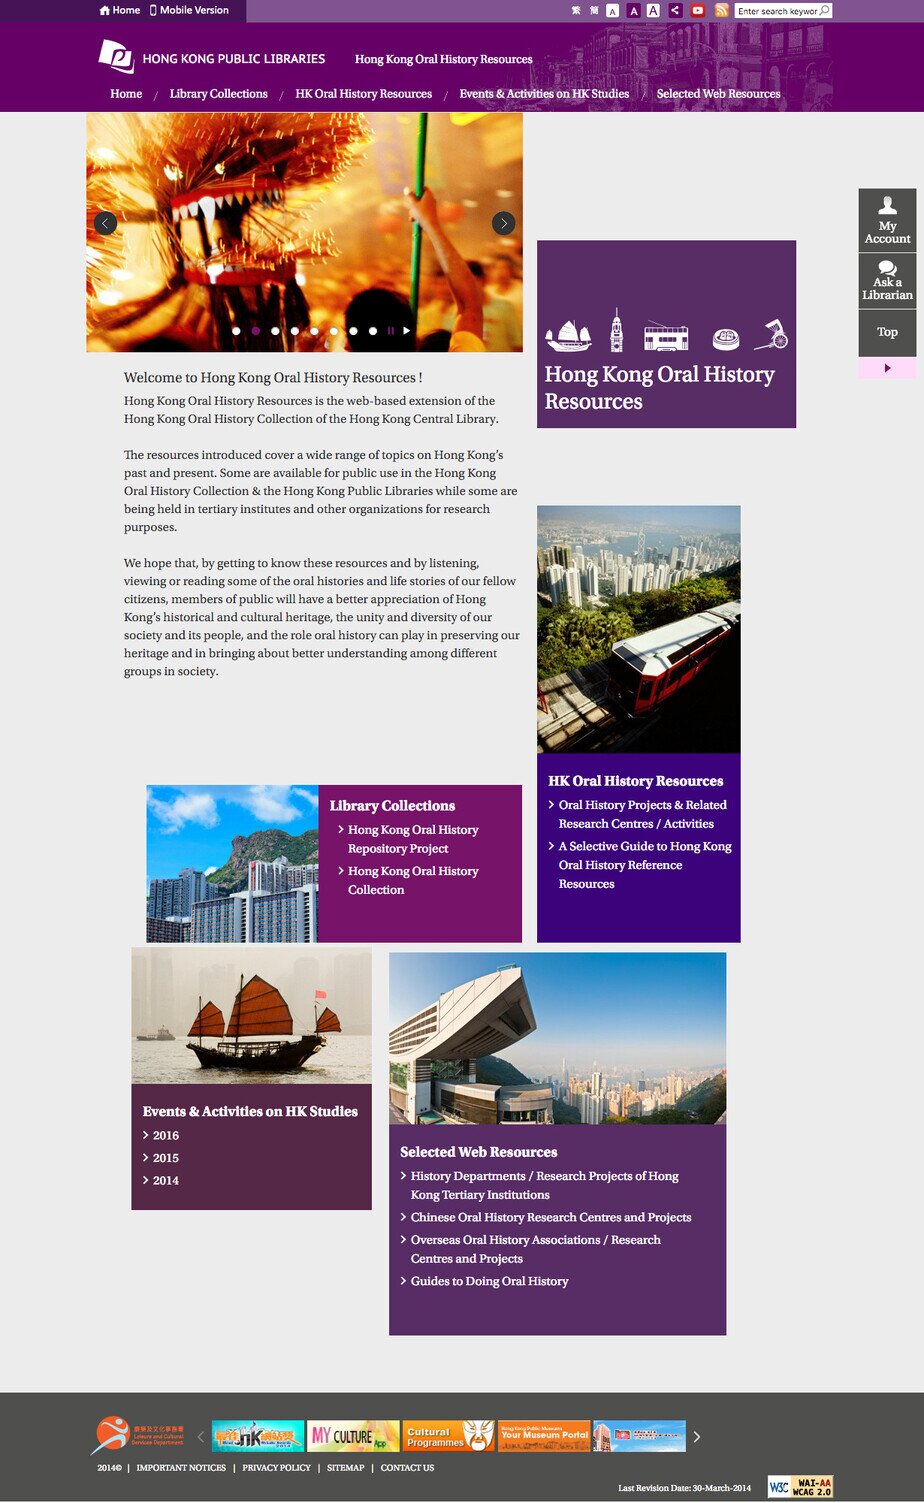 Hong Kong Public Libraries website screenshot for desktop version 9 of 10